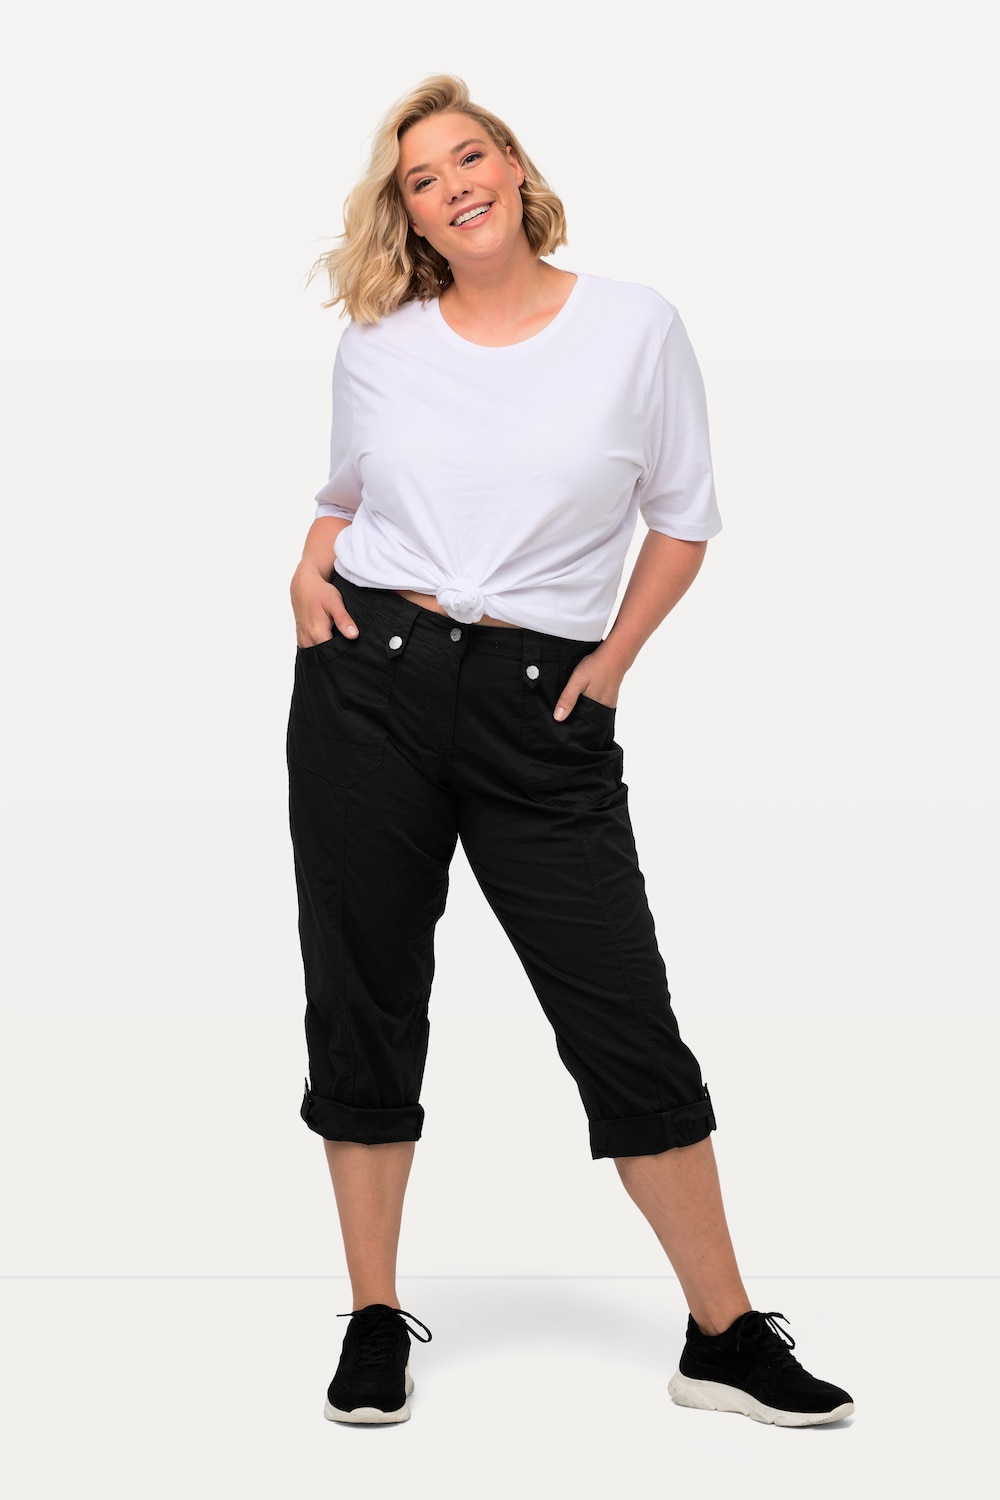 grandes tailles pantalon cargo 7/8 avec attaches, femmes, noir, taille: 50, coton, ulla popken